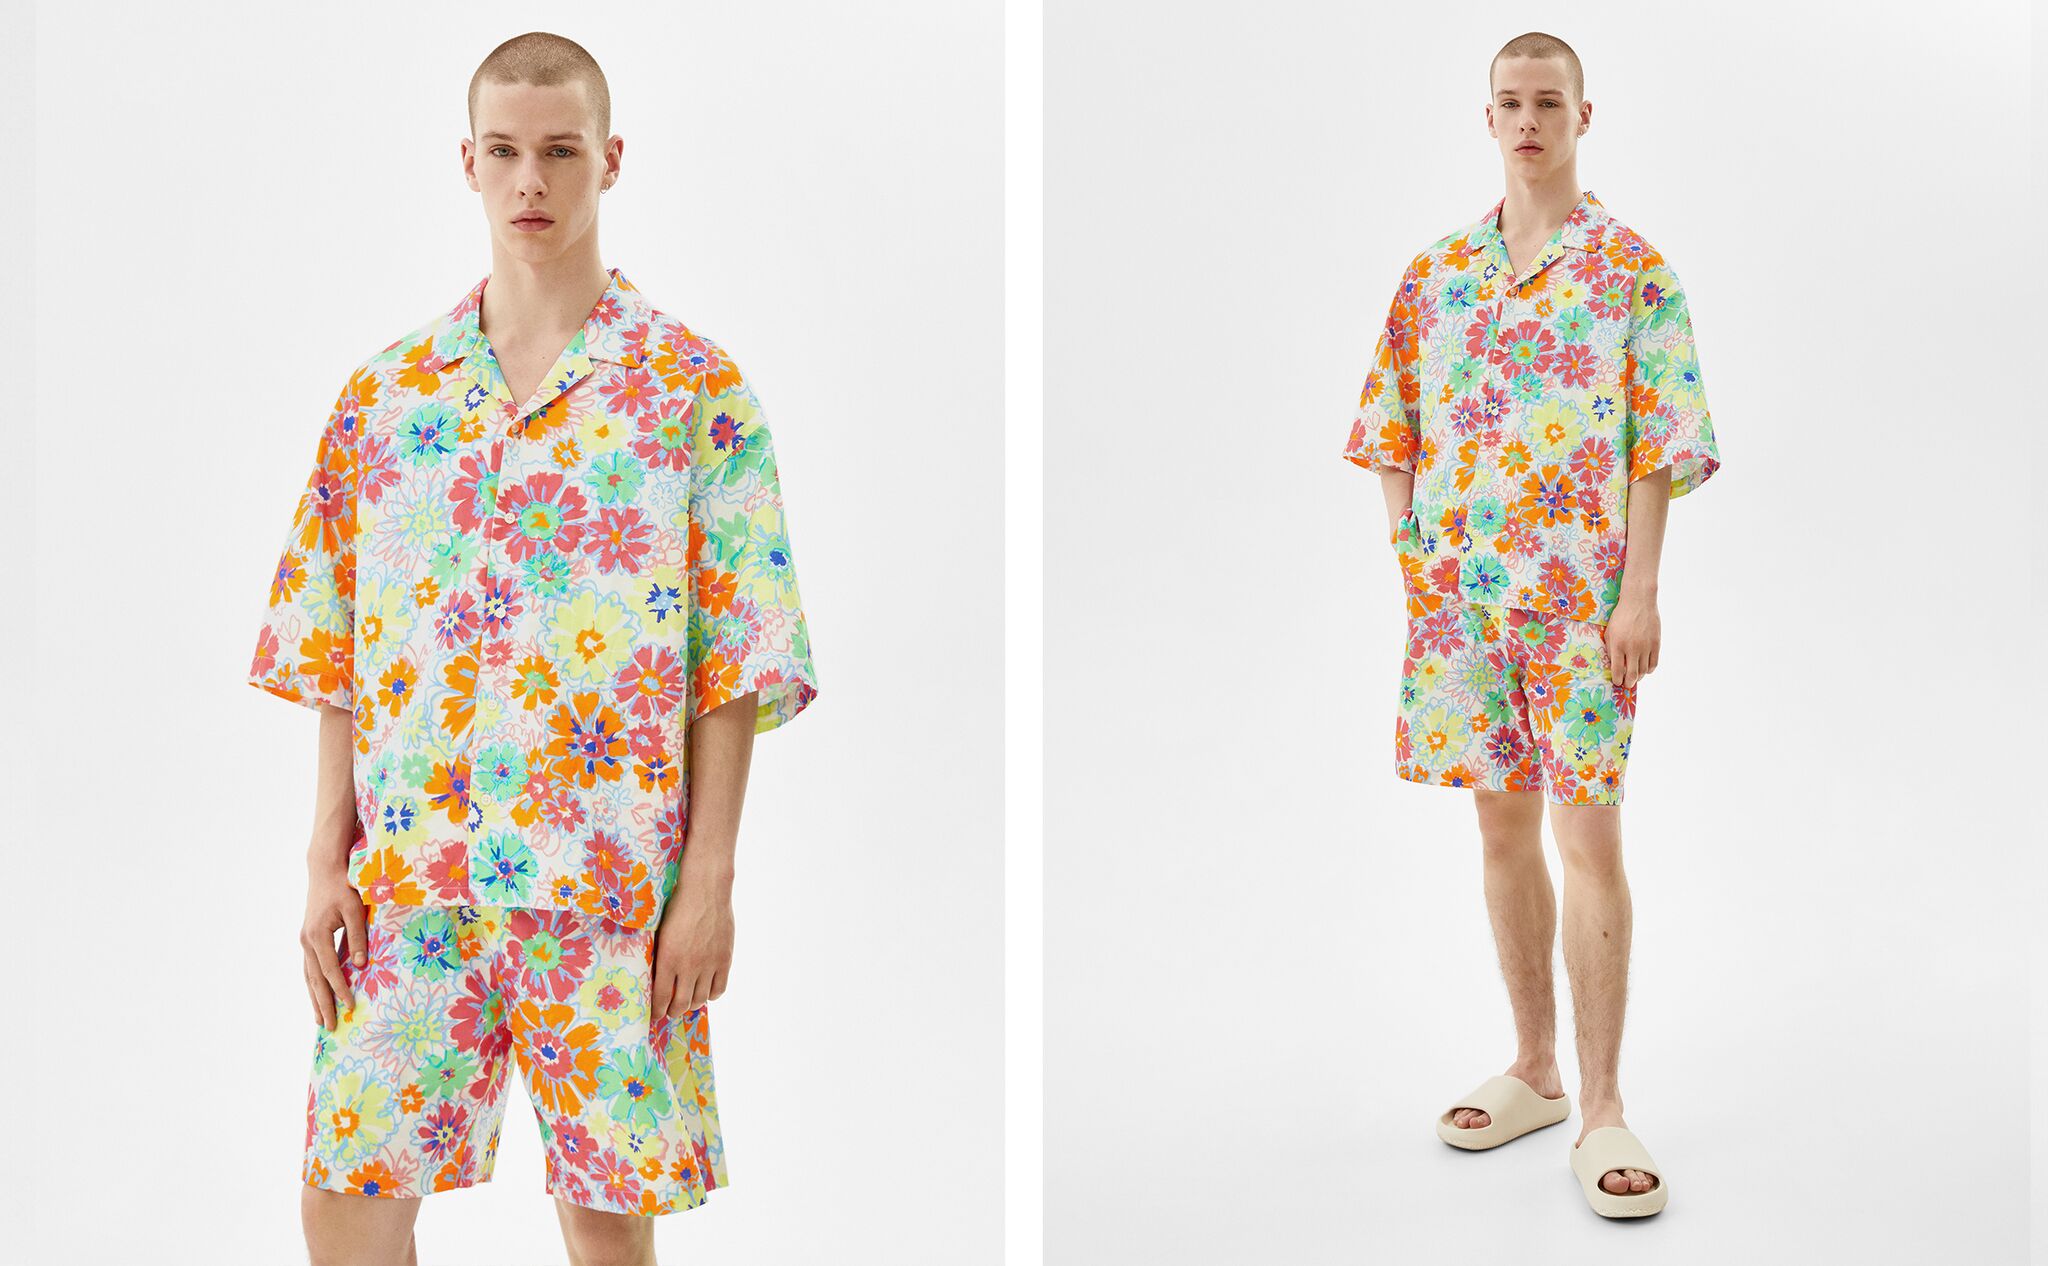 Floral print shirt and Bermuda shorts set